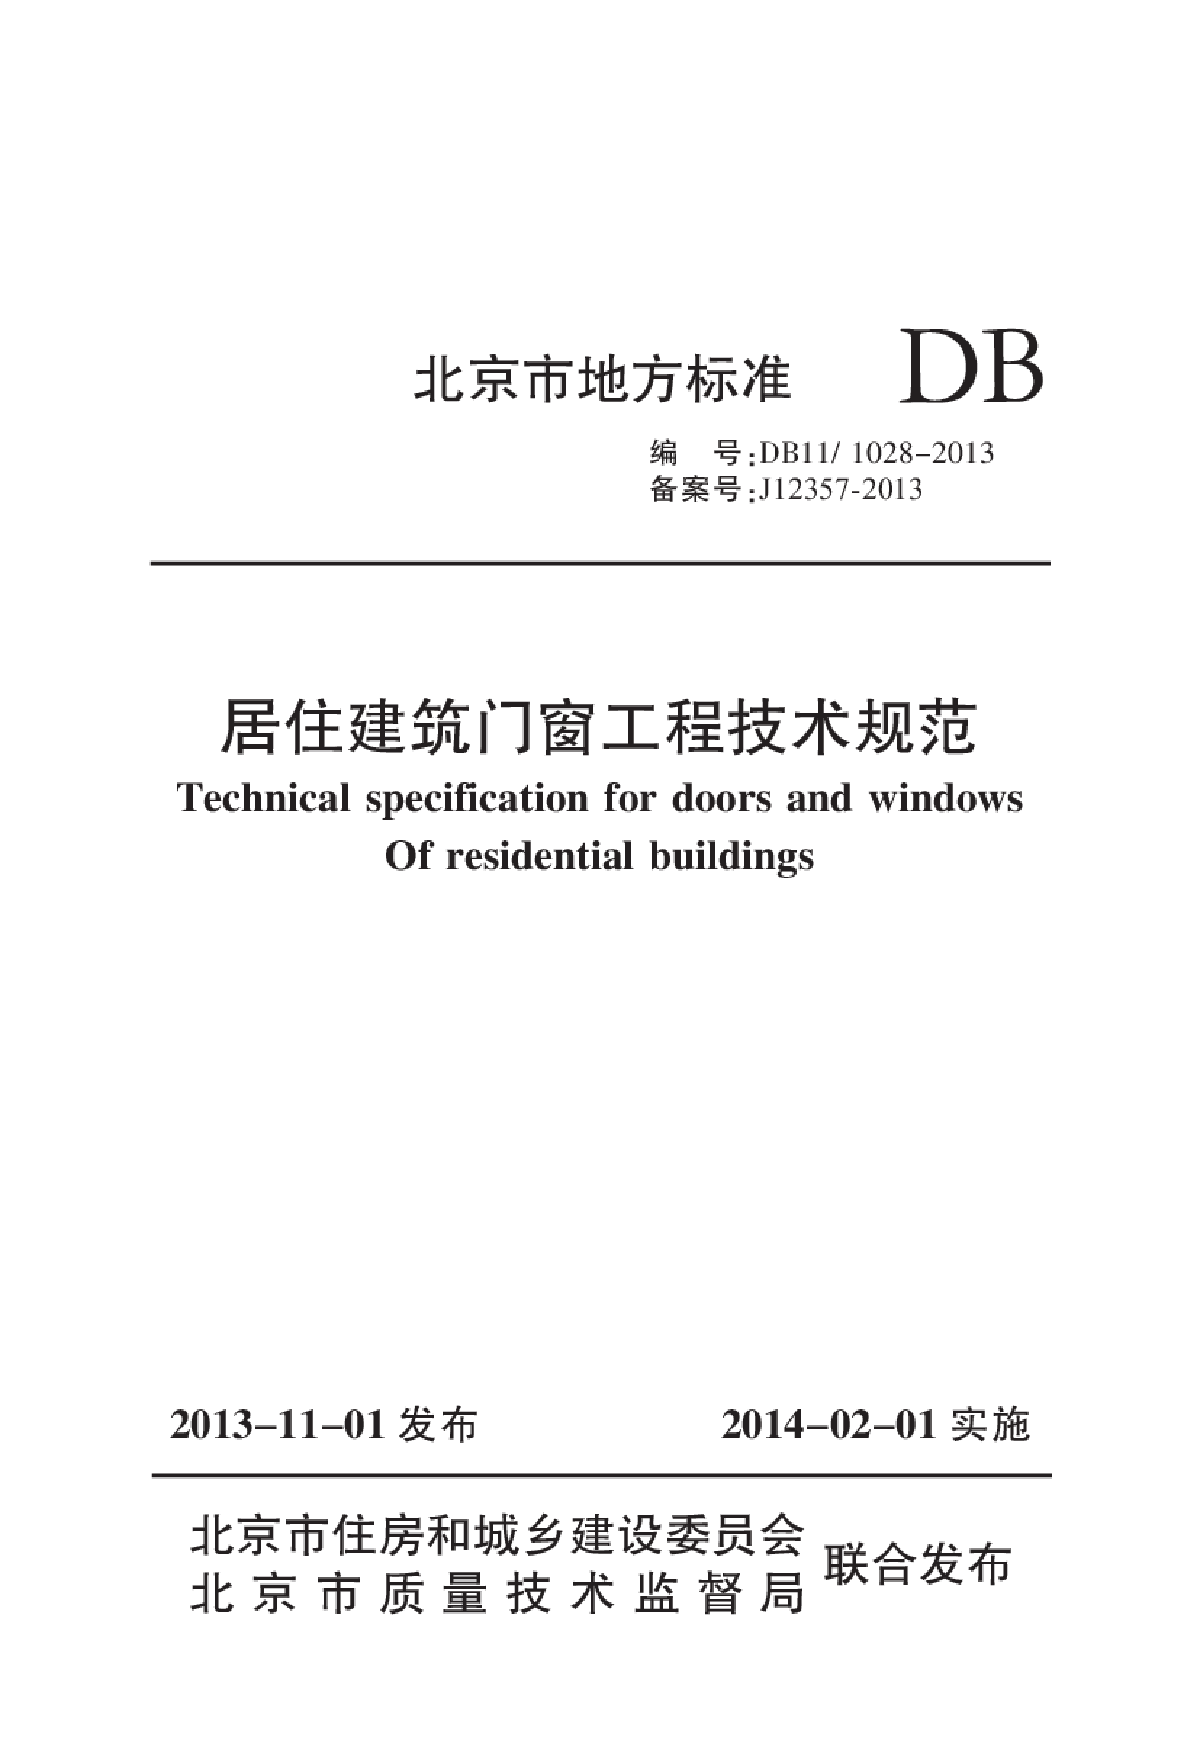 DB111028-2013居住建筑门窗工程技术规范